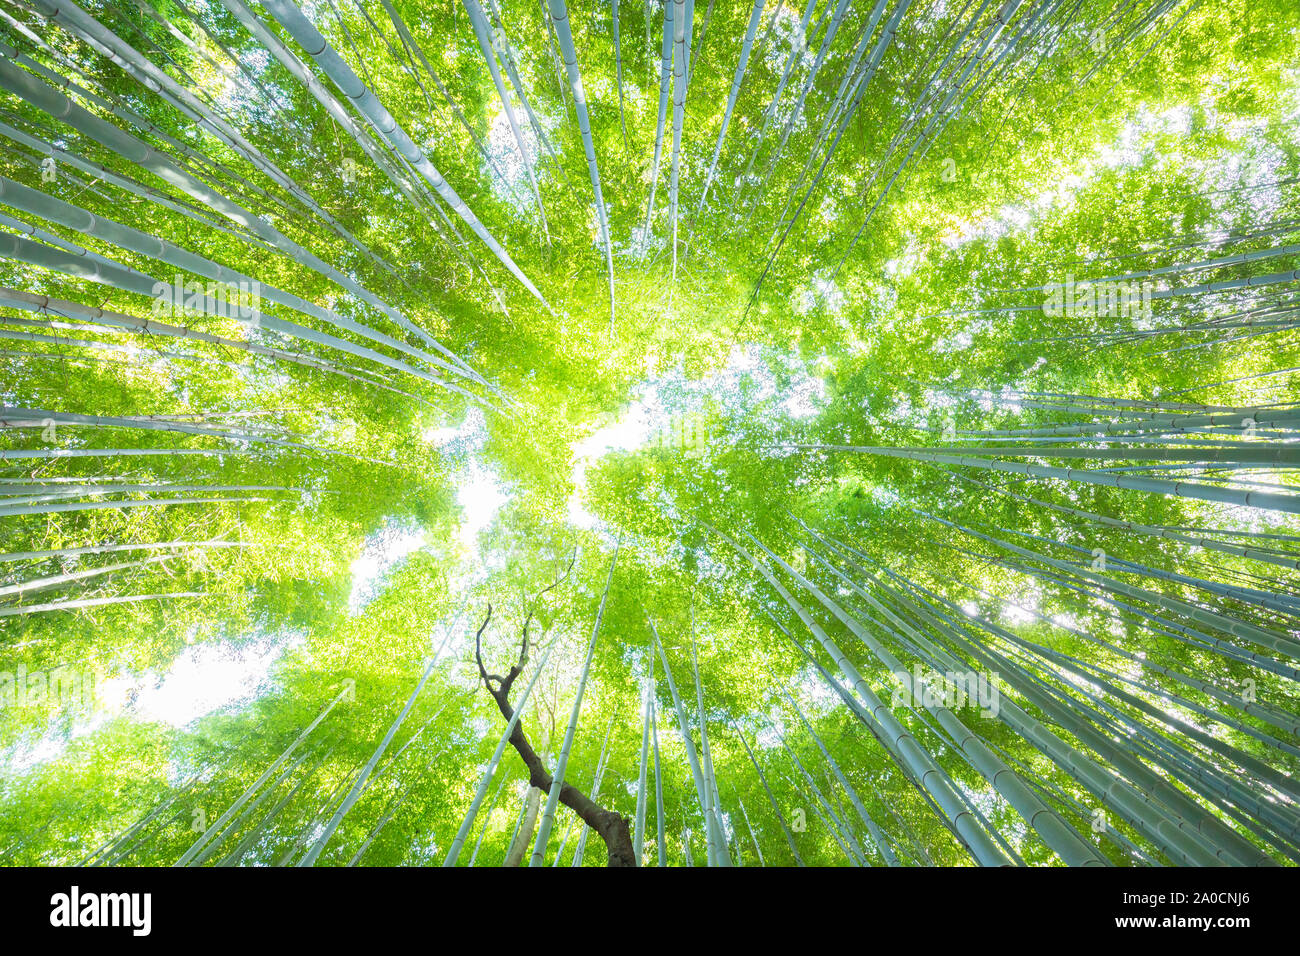 La lussureggiante vegetazione nella famosa località turistica Foresta di Bamboo, Kyoto, Giappone. Foto Stock